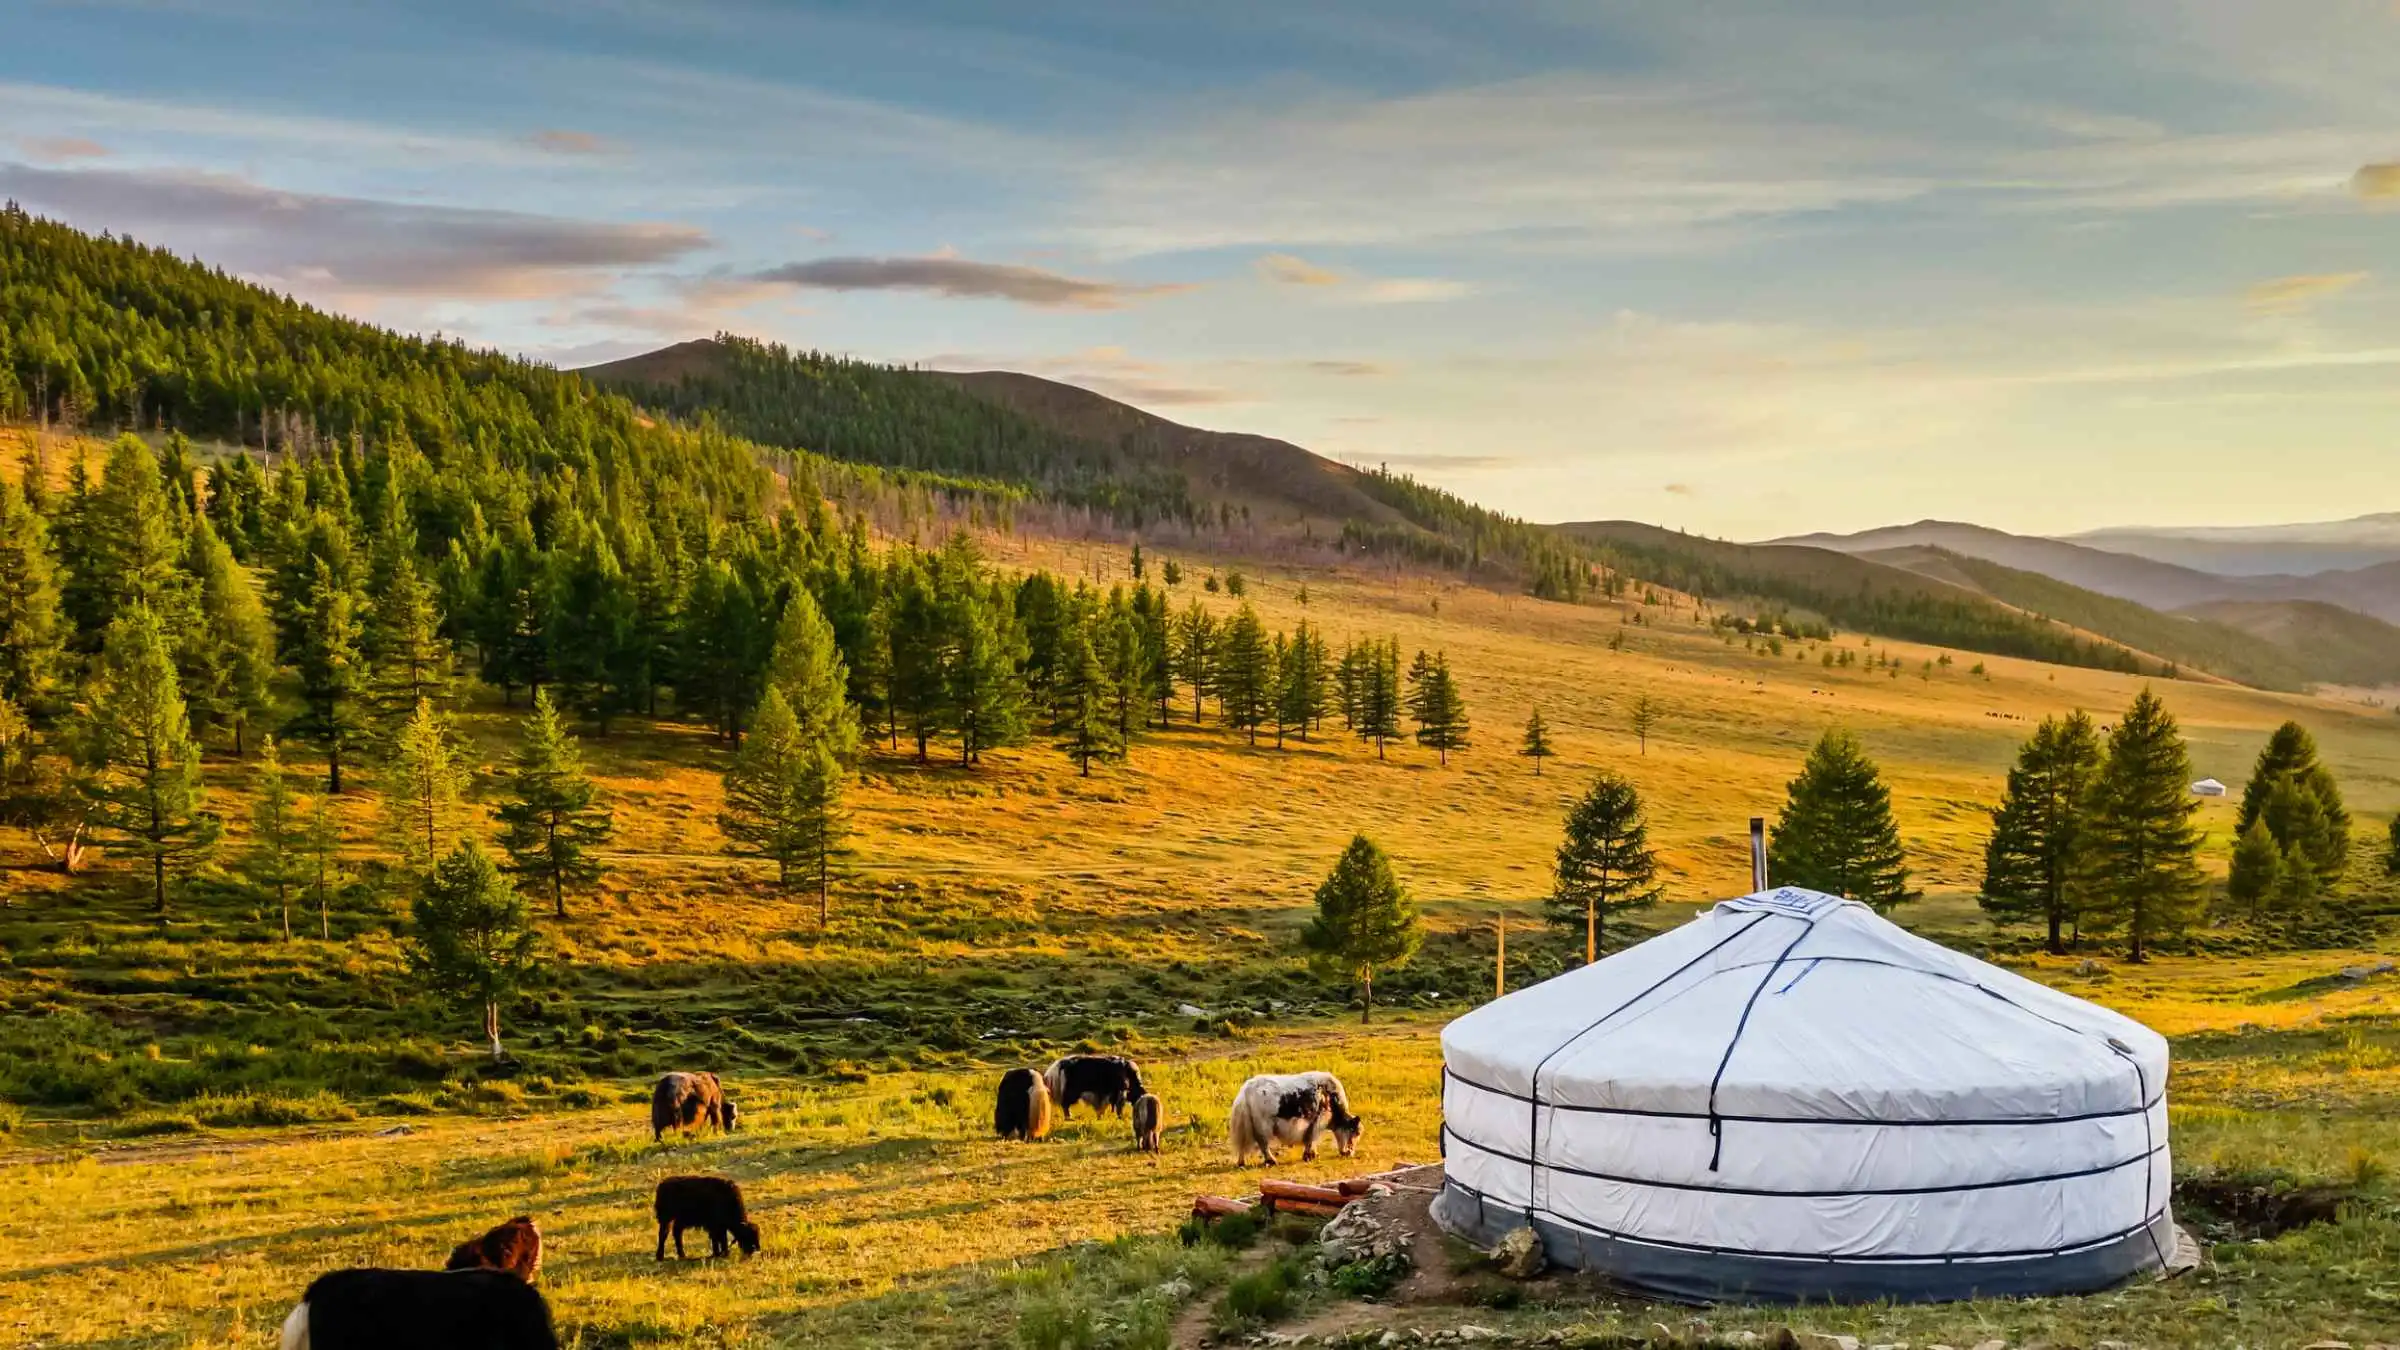 Mongolia tourism